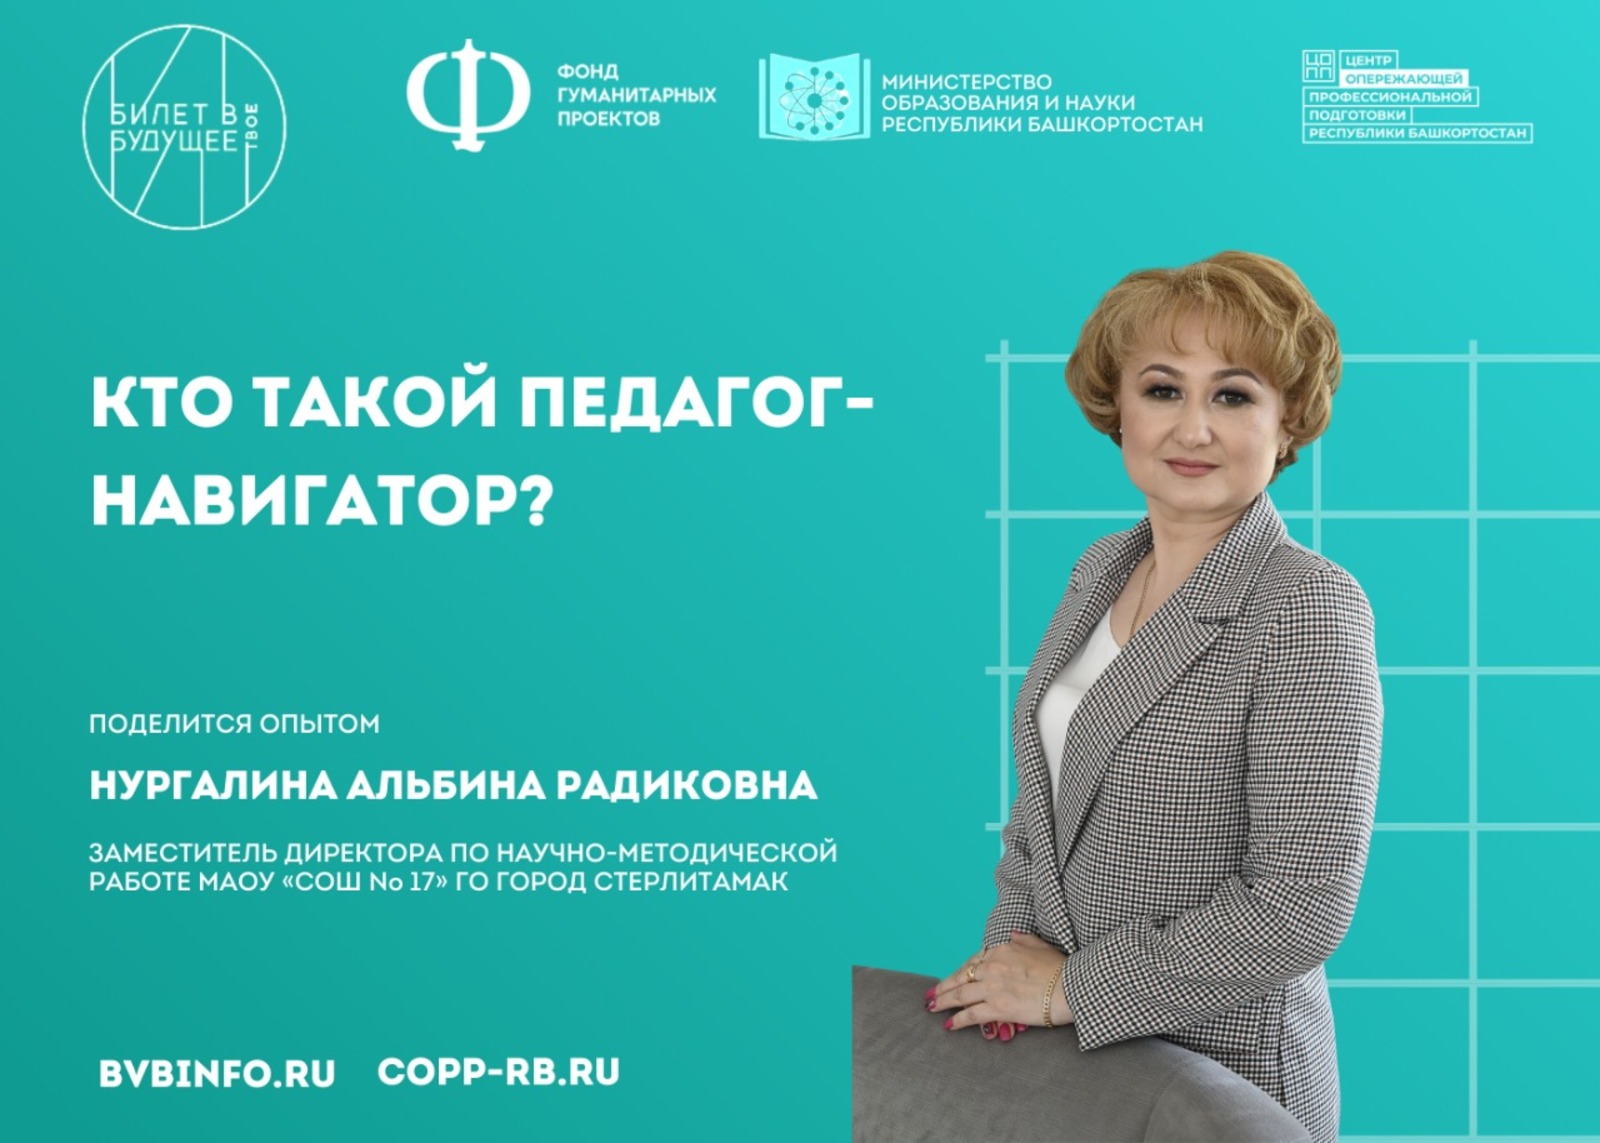 Педагоги-навигаторы Башкортостана участвуют в проекте «Билет в будущее»